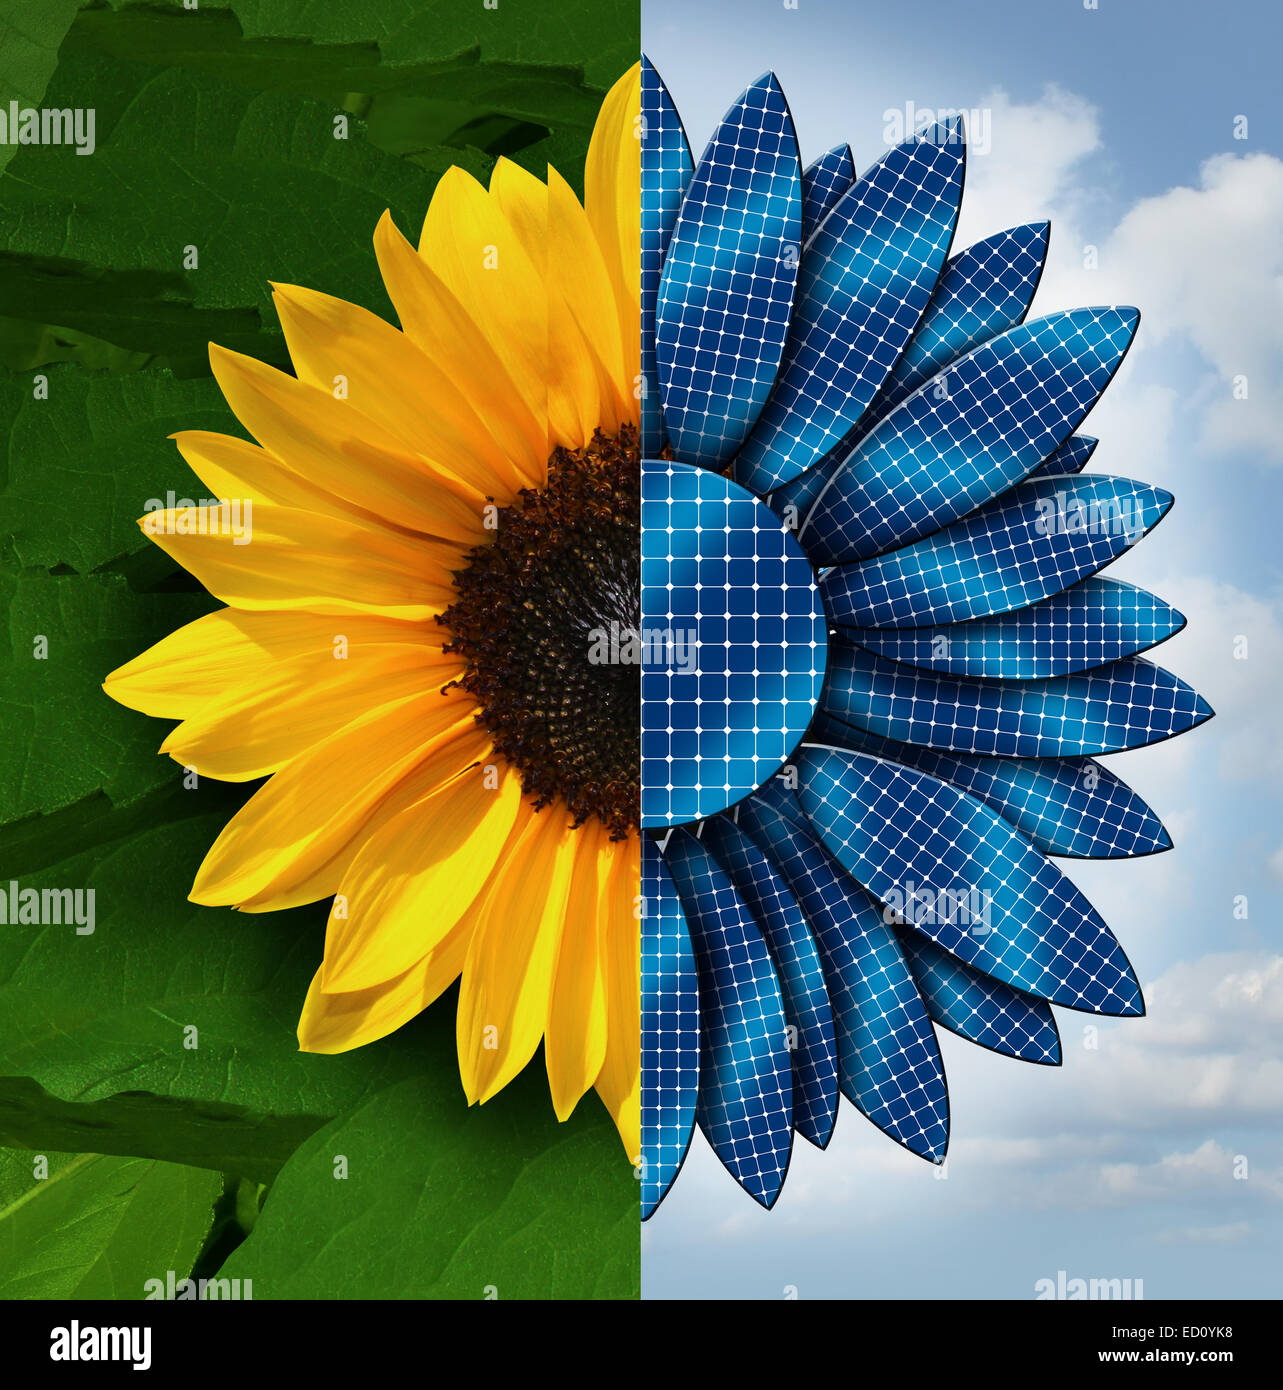 Concept de l'énergie solaire comme un tournesol divisé en deux avec le côté opposé comme pétales panneau solaire en tant que symbole et métaphore de l'écologie et de la technologie. togethder de travail Banque D'Images